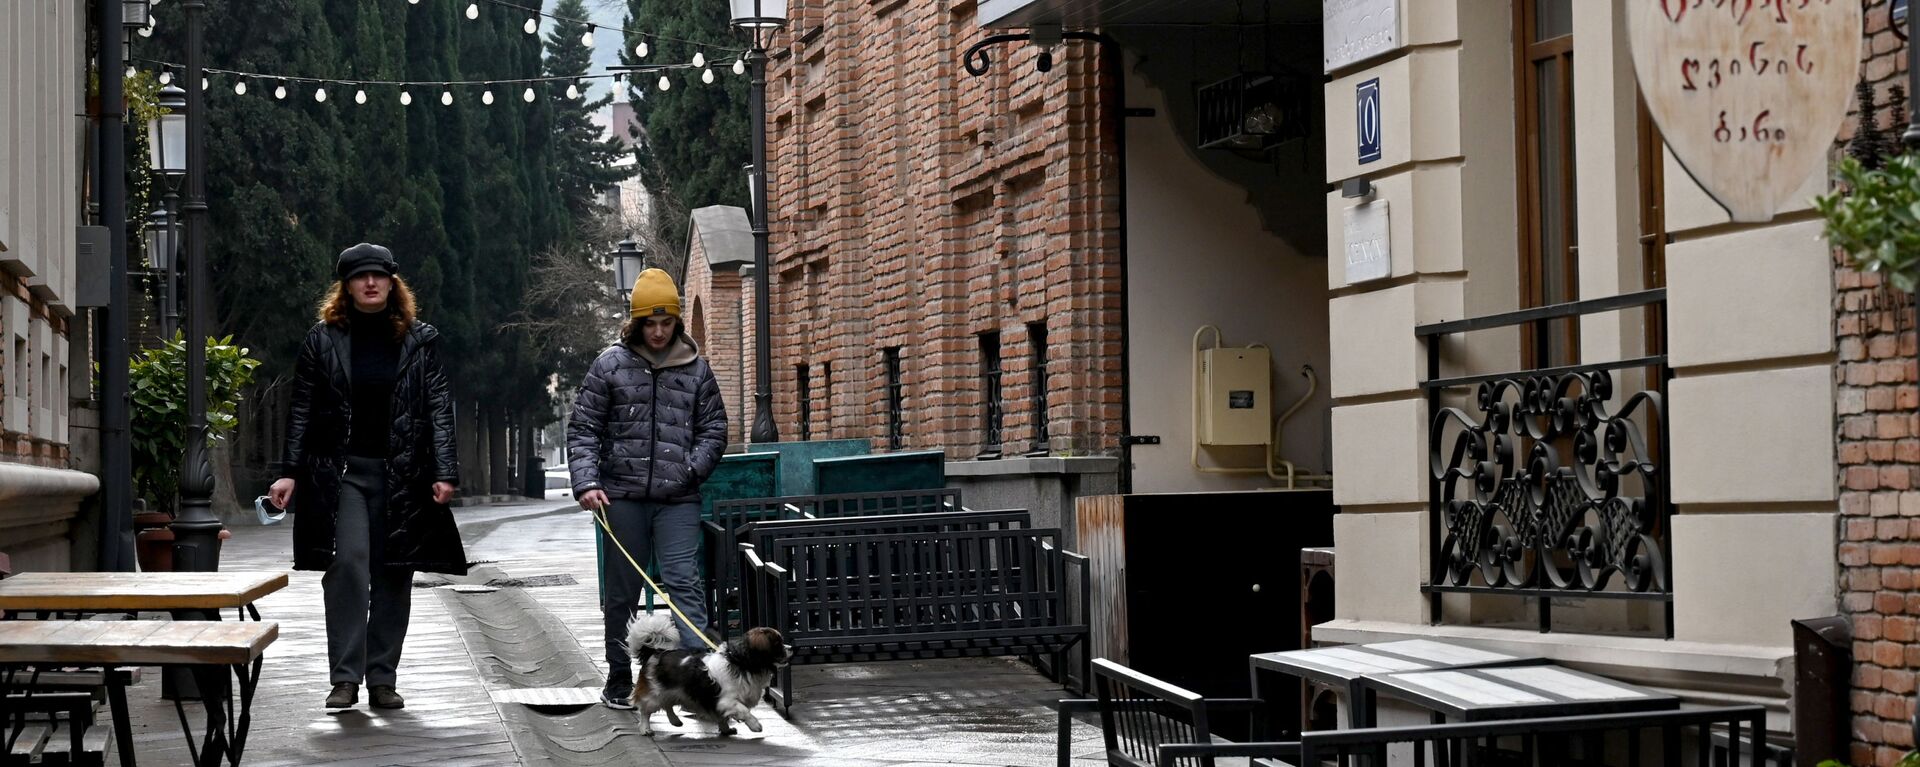 Виды Тбилиси - прохожие на улице в старом городе идут мимо закрытых кафе - Sputnik საქართველო, 1920, 25.03.2021